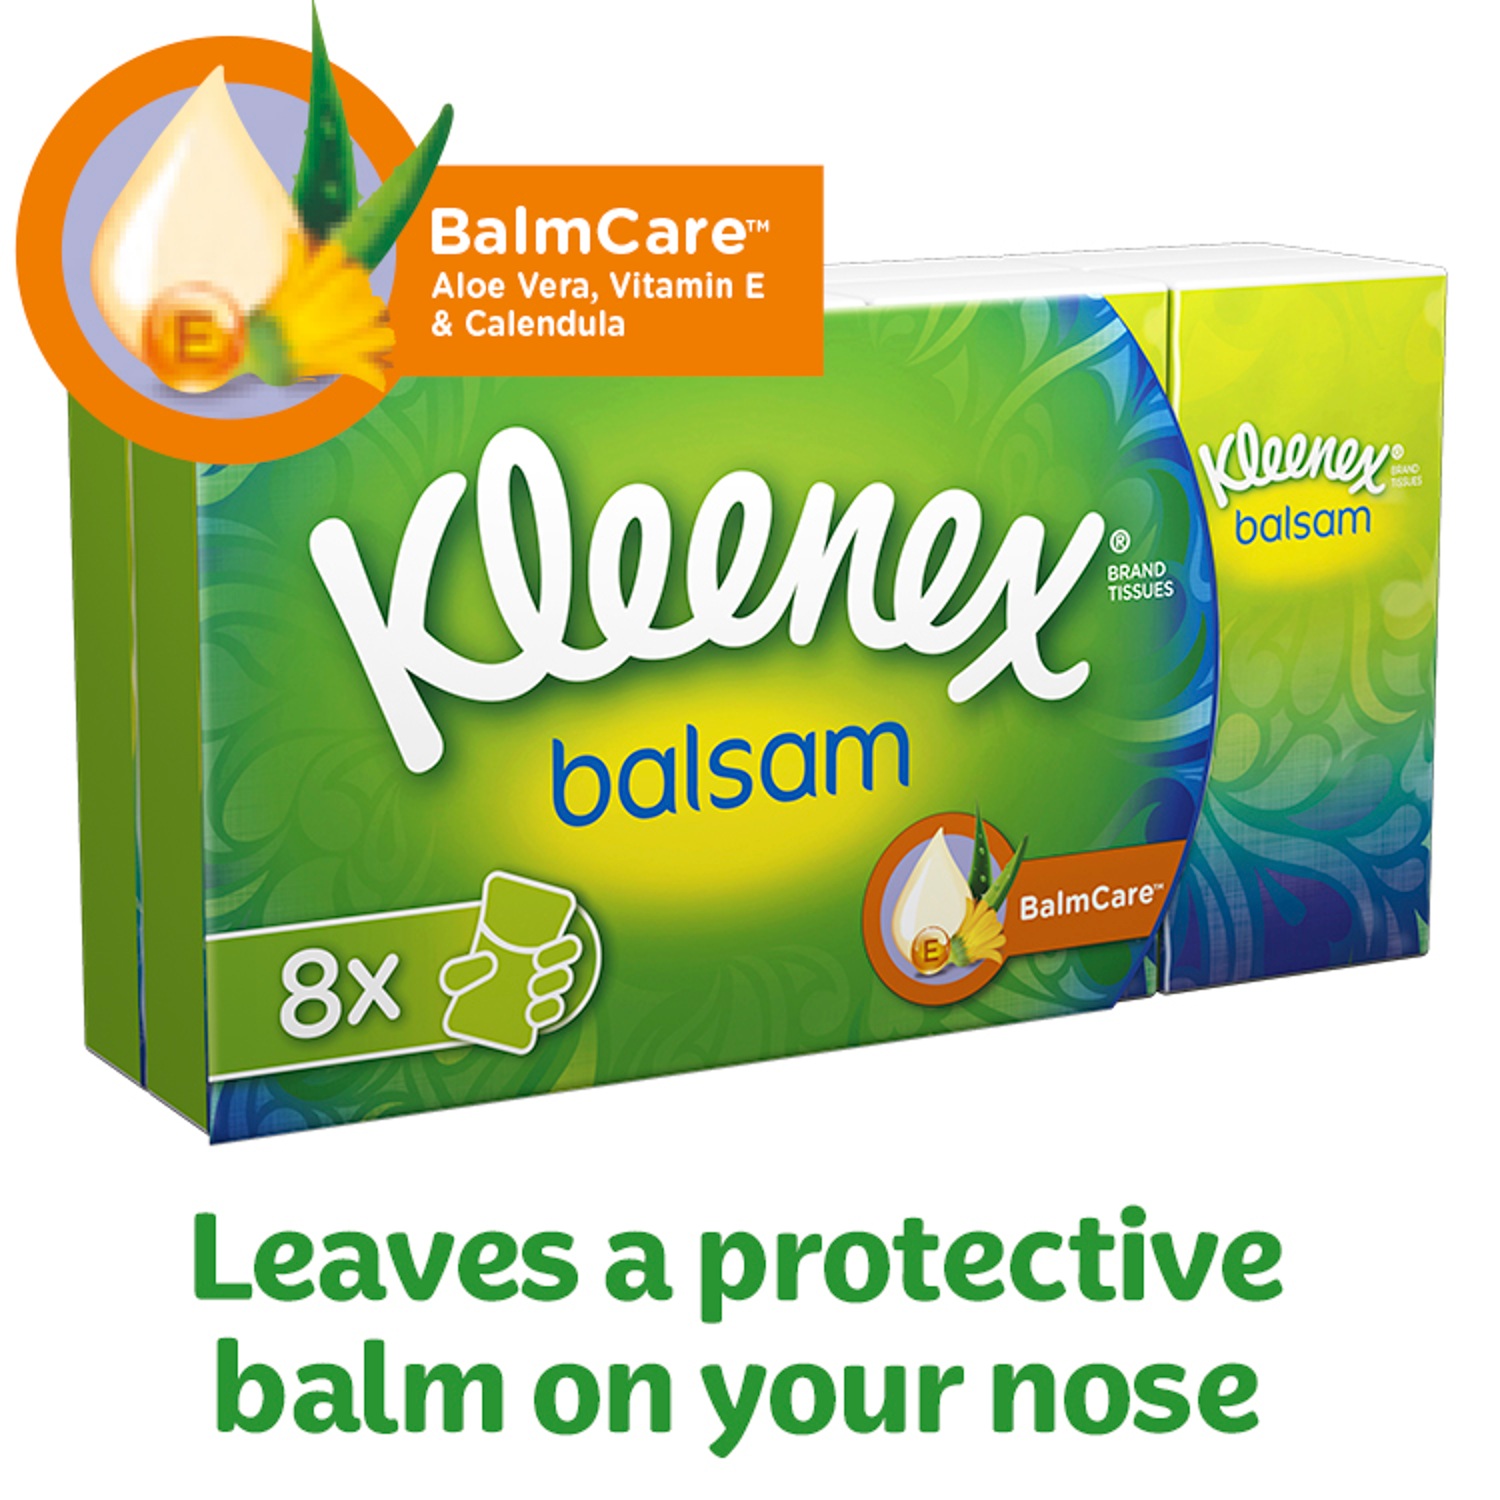 Kleenex Balsam Pocket Tissues 8 Pack